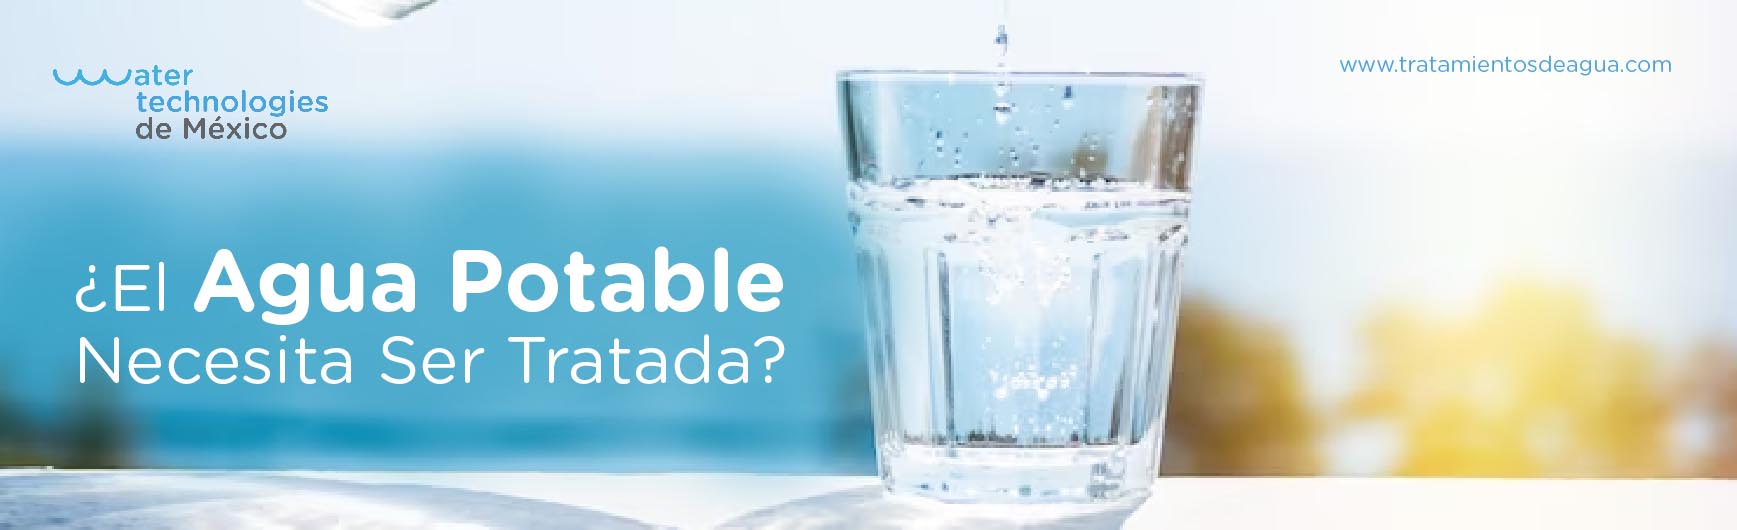 ¿El Agua Potable Necesita Ser Tratada? Descubriendo la Importancia del Tratamiento del Agua Potable